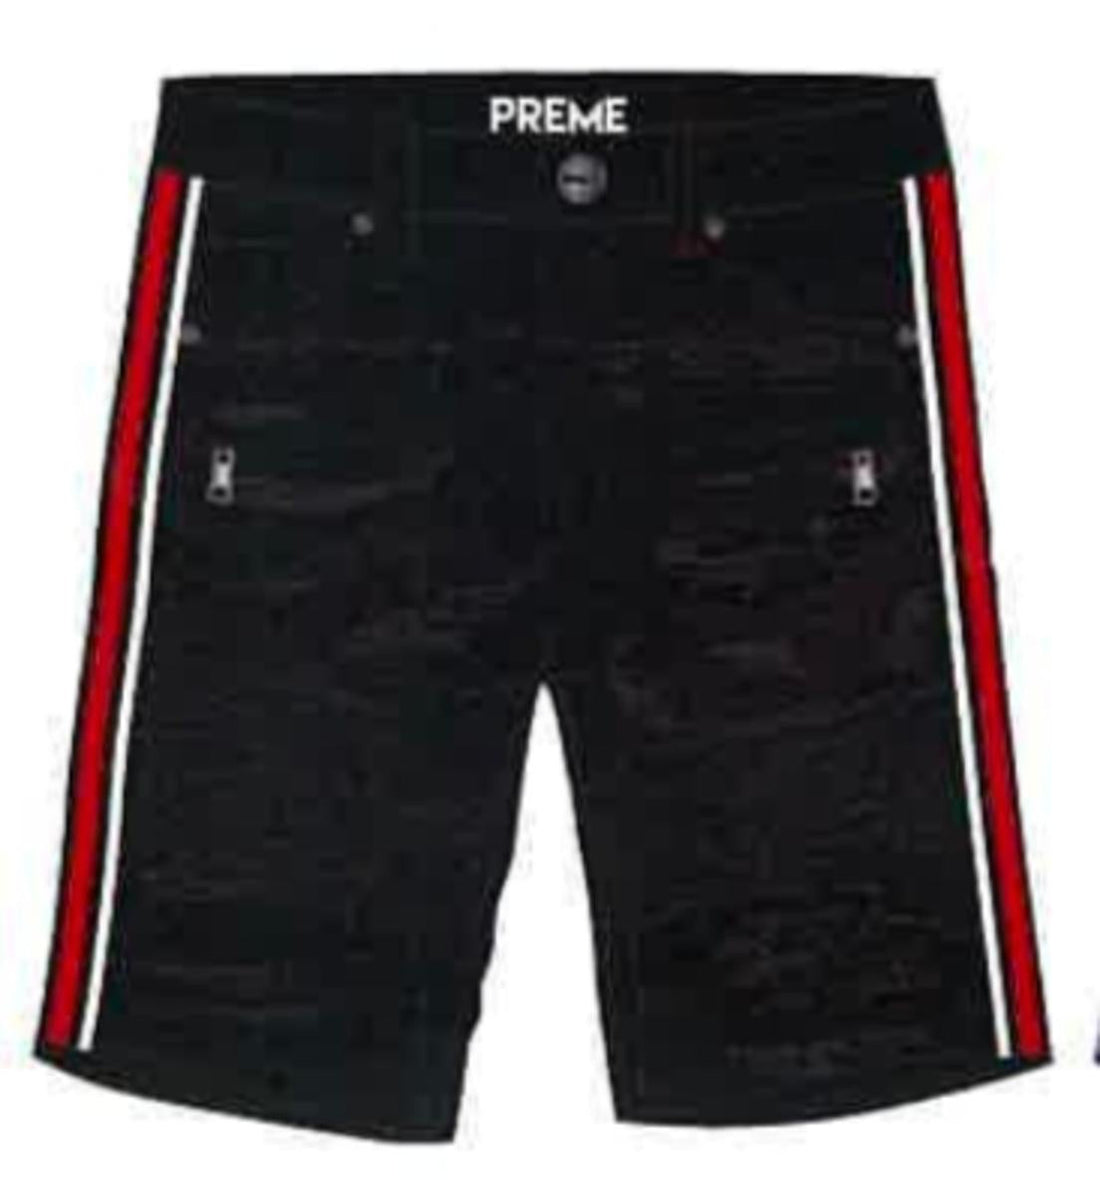 Preme Black/Red Tape Shorts